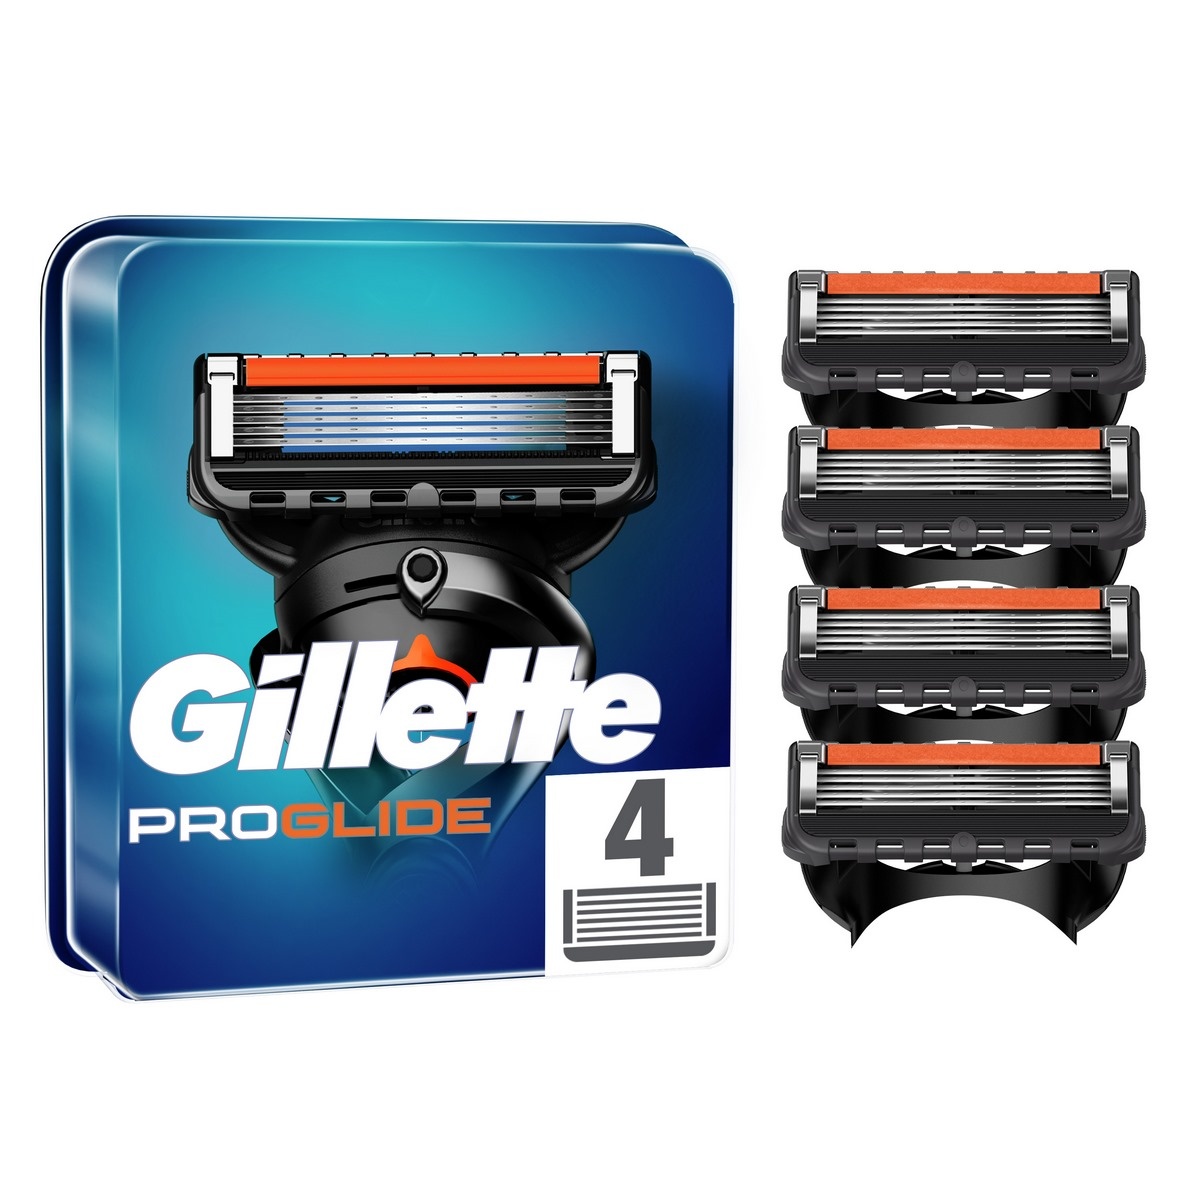 Gillette Náhradní hlavice Fusion5 ProGlide